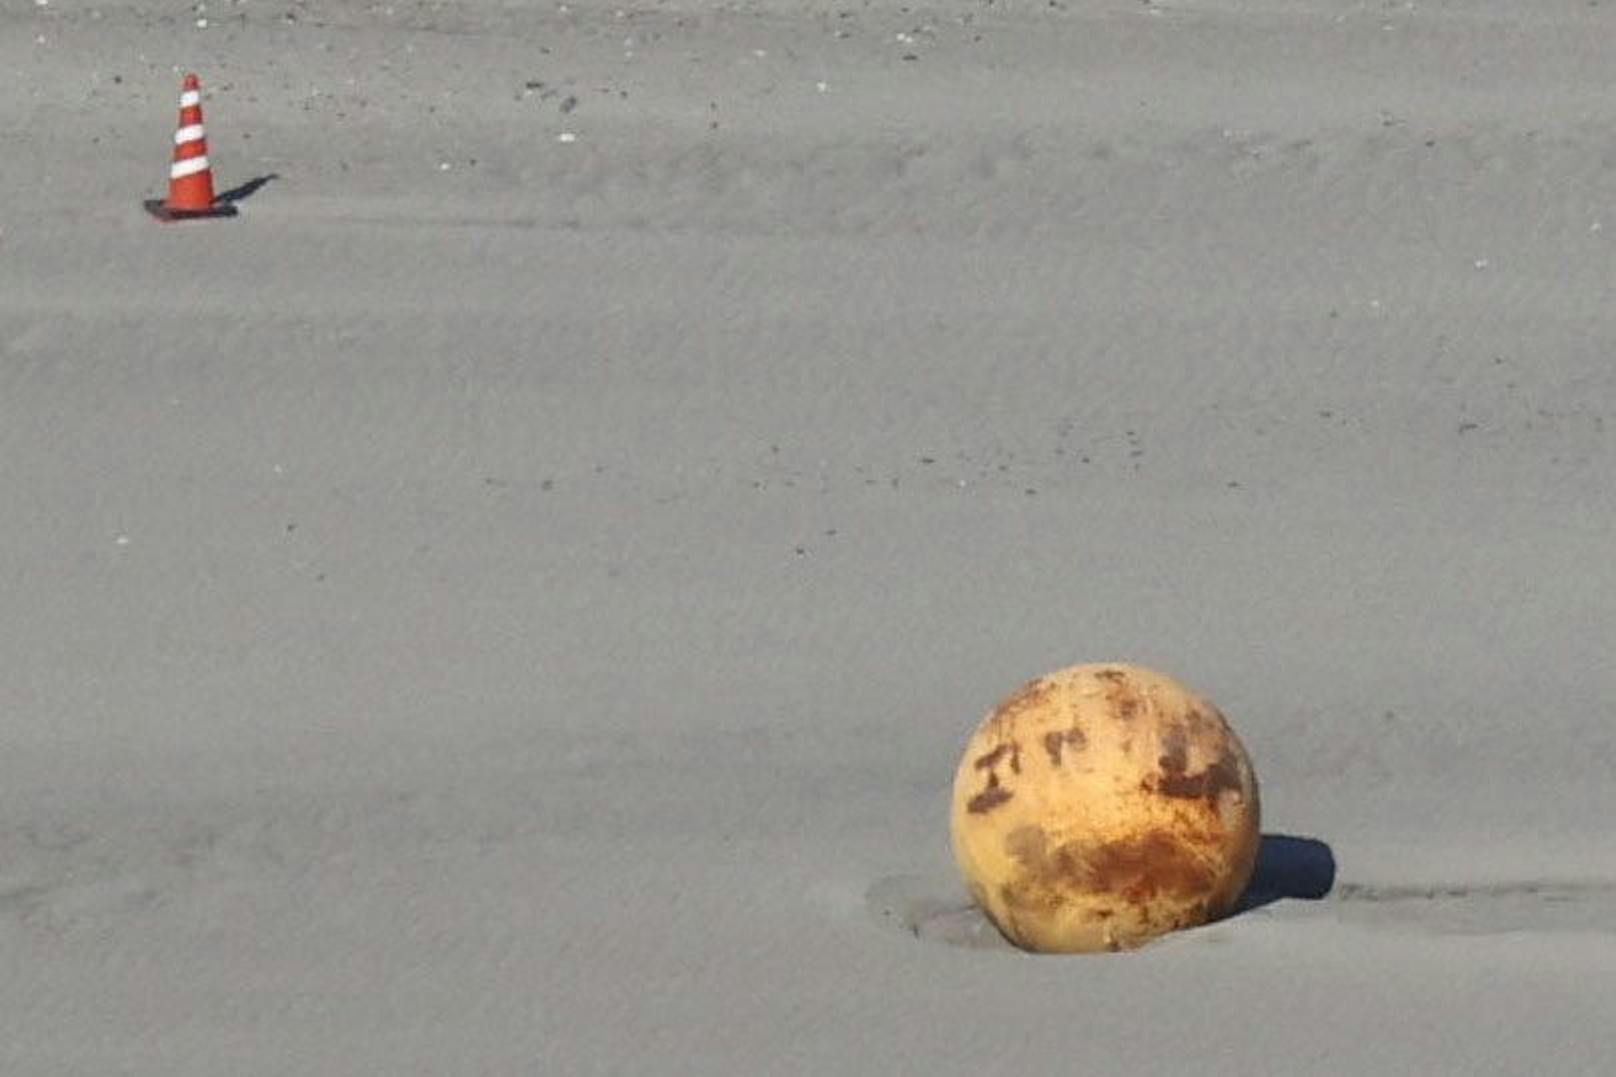 Kurz nachdem in den USA ein mutmaßlicher, chinesischer Spionageballon abgeschossen wurde, wird in der japanischen Stadt Hamamatsu jetzt eine mysteriöse Kugel am Strand gefunden.